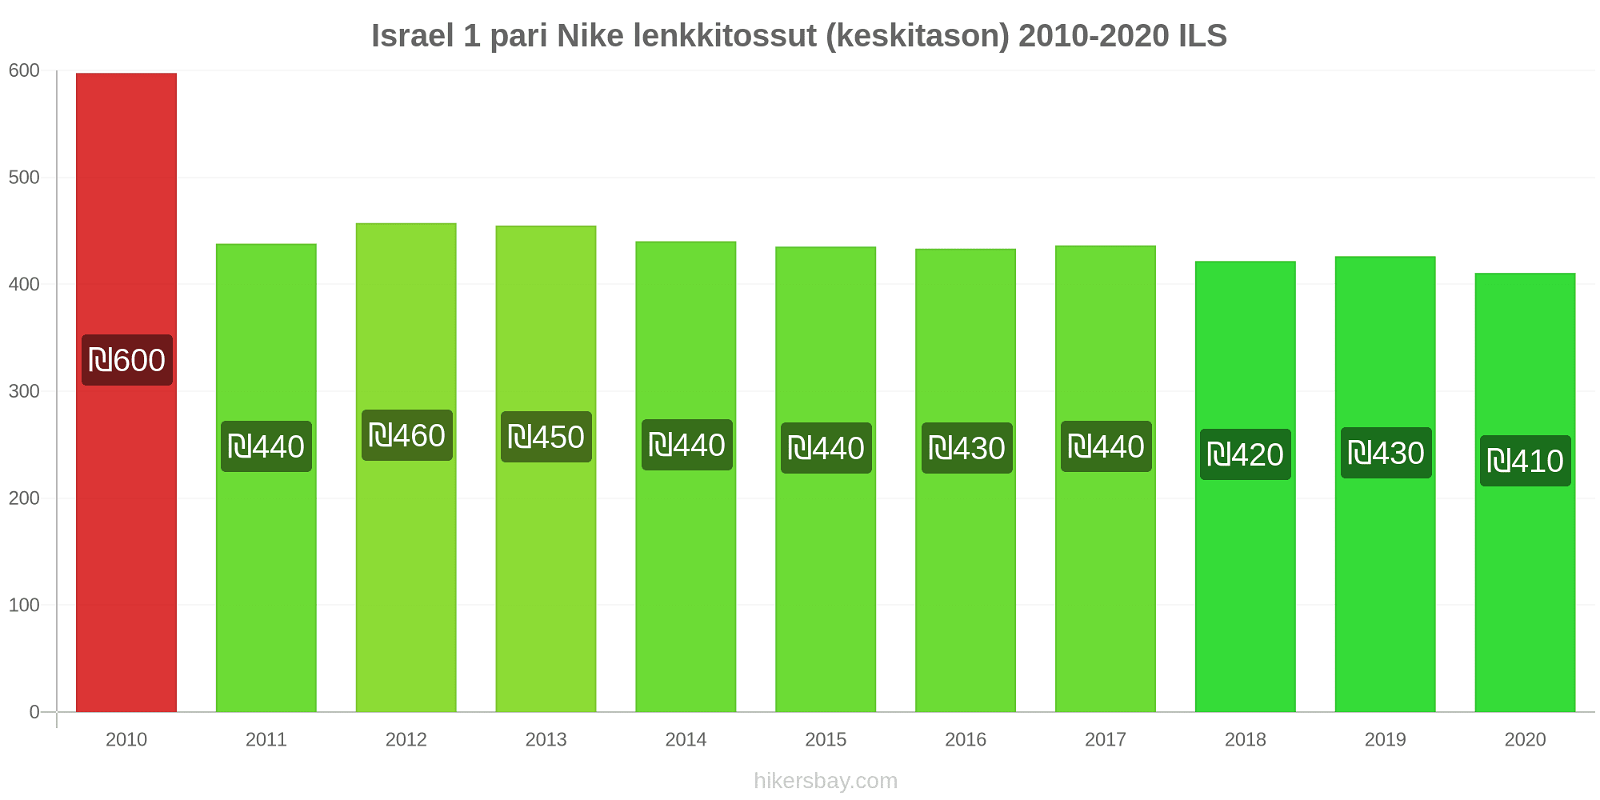 Israel hintojen muutokset 1 pari Nike lenkkitossut (keskitason) hikersbay.com